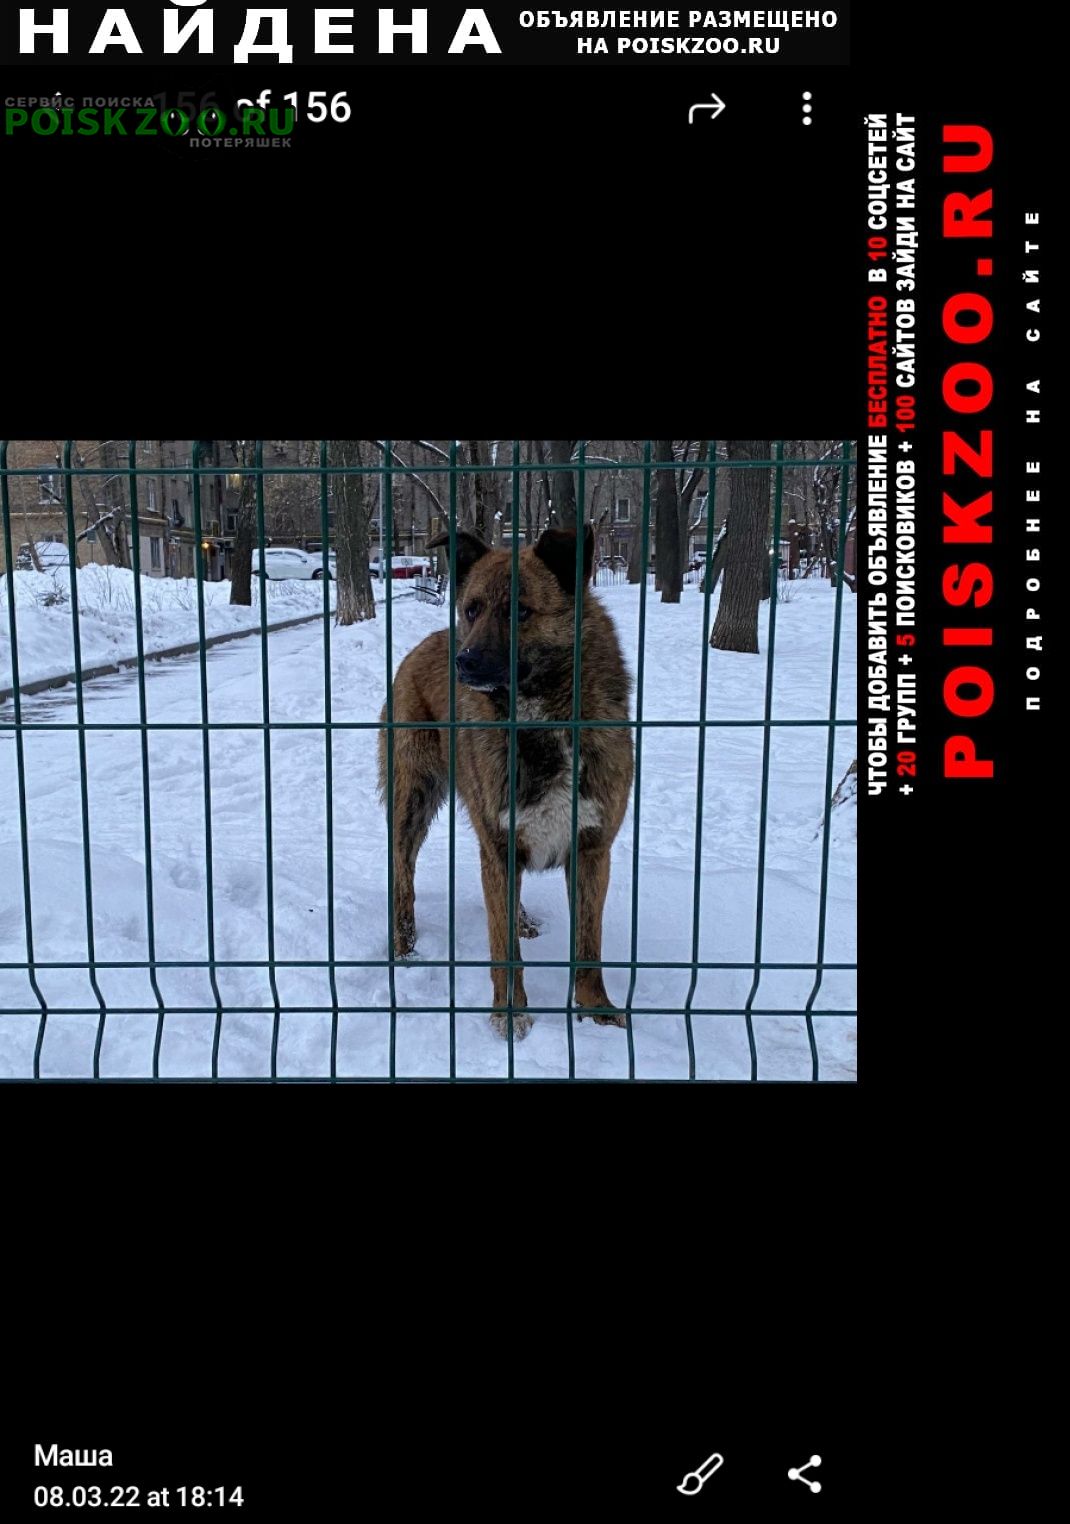 Найдена собака потеряшка на автозаводской ул. Москва